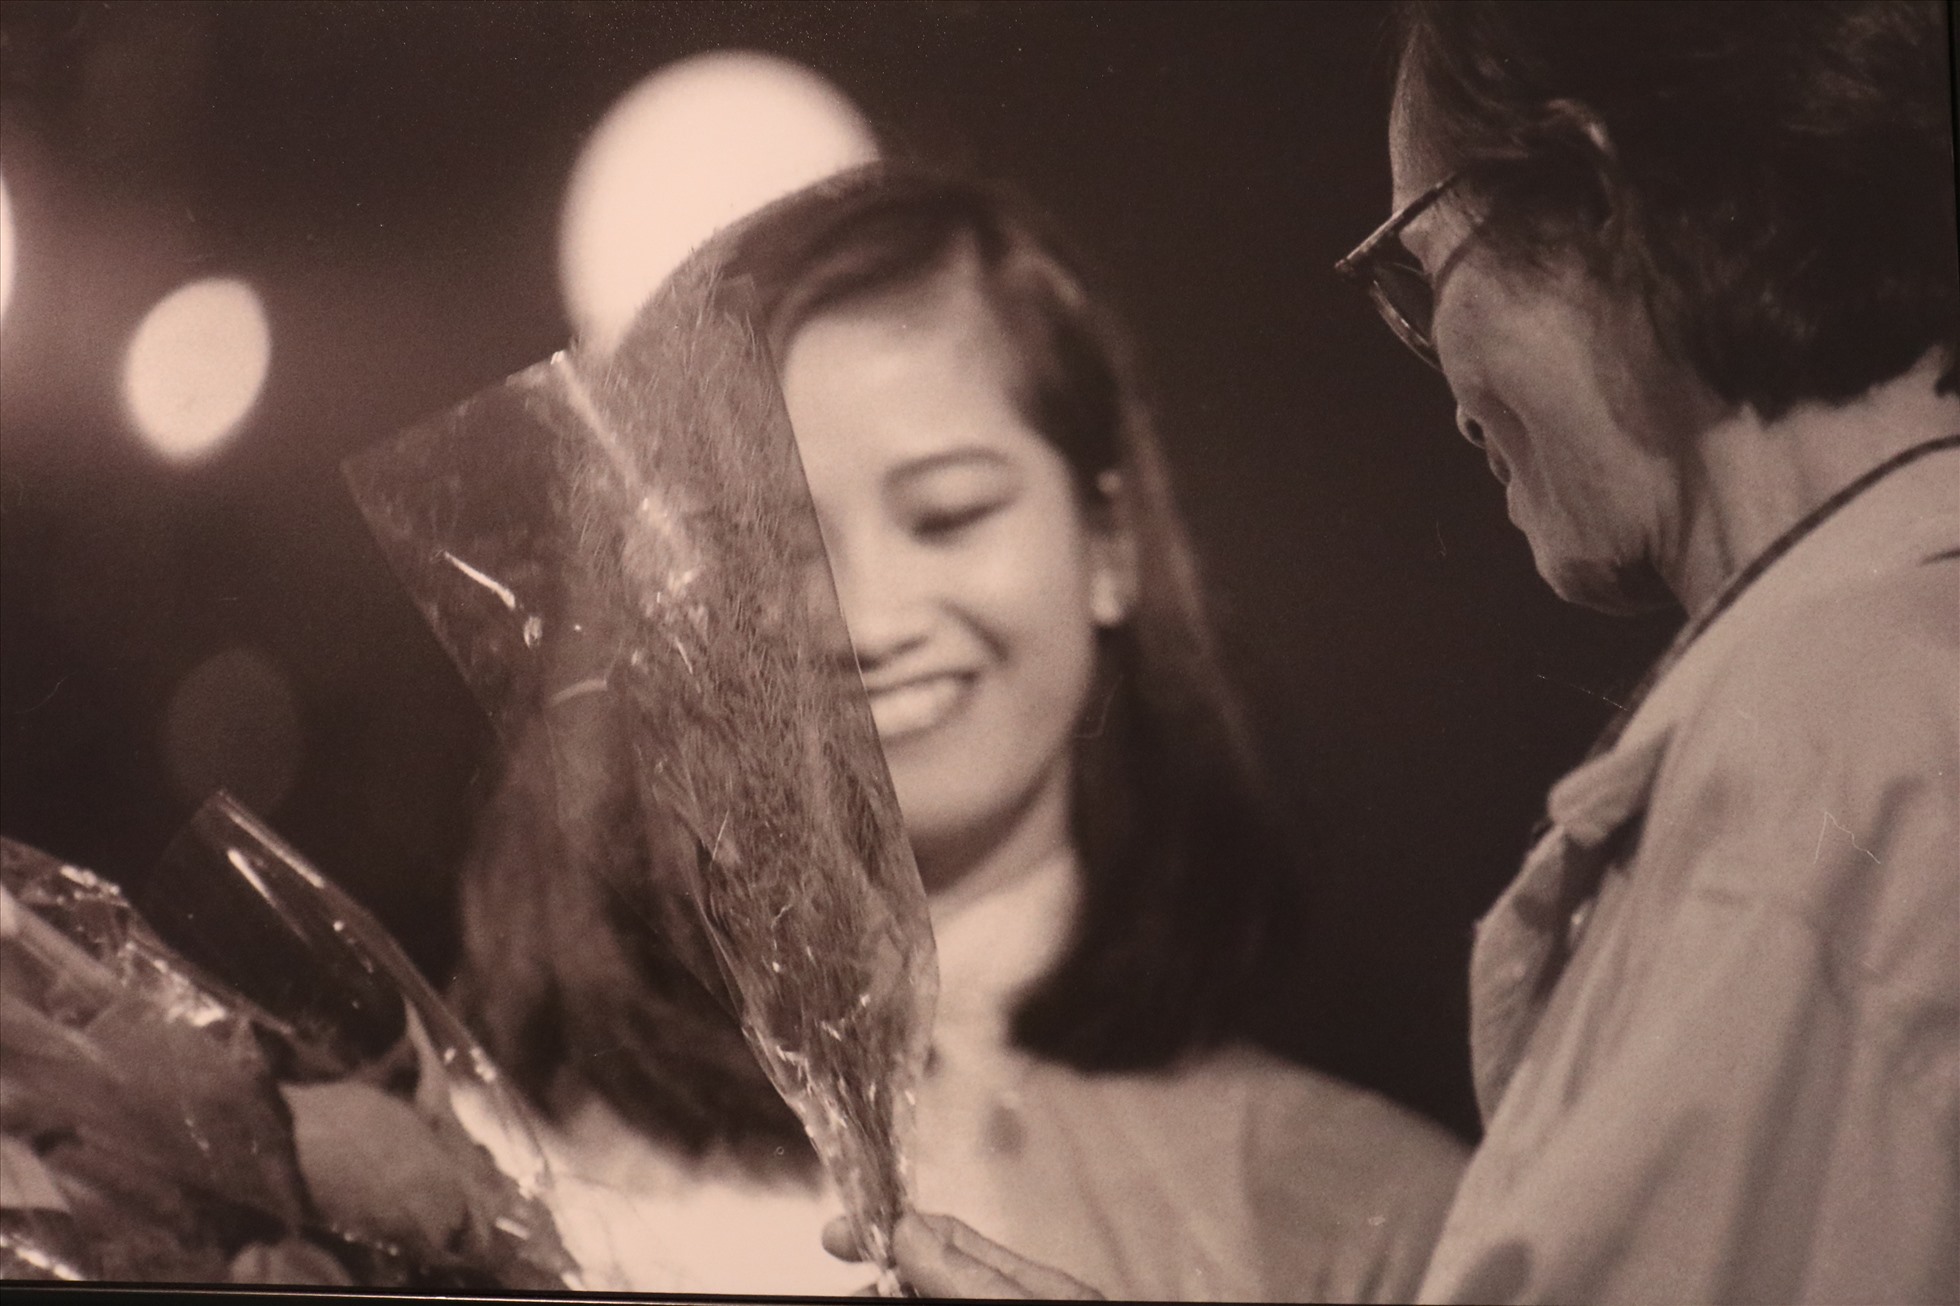 Bức ảnh được nhiếp ảnh gia Dương Minh Long chụp vào năm 1997, ghi lại khoảnh khắc nhạc sĩ Trịnh Công Sơn lên sâu khấu tặng hoa cho Hồng Nhung trong một đêm nhạc tại phòng trà ở quận 1, TPHCM.